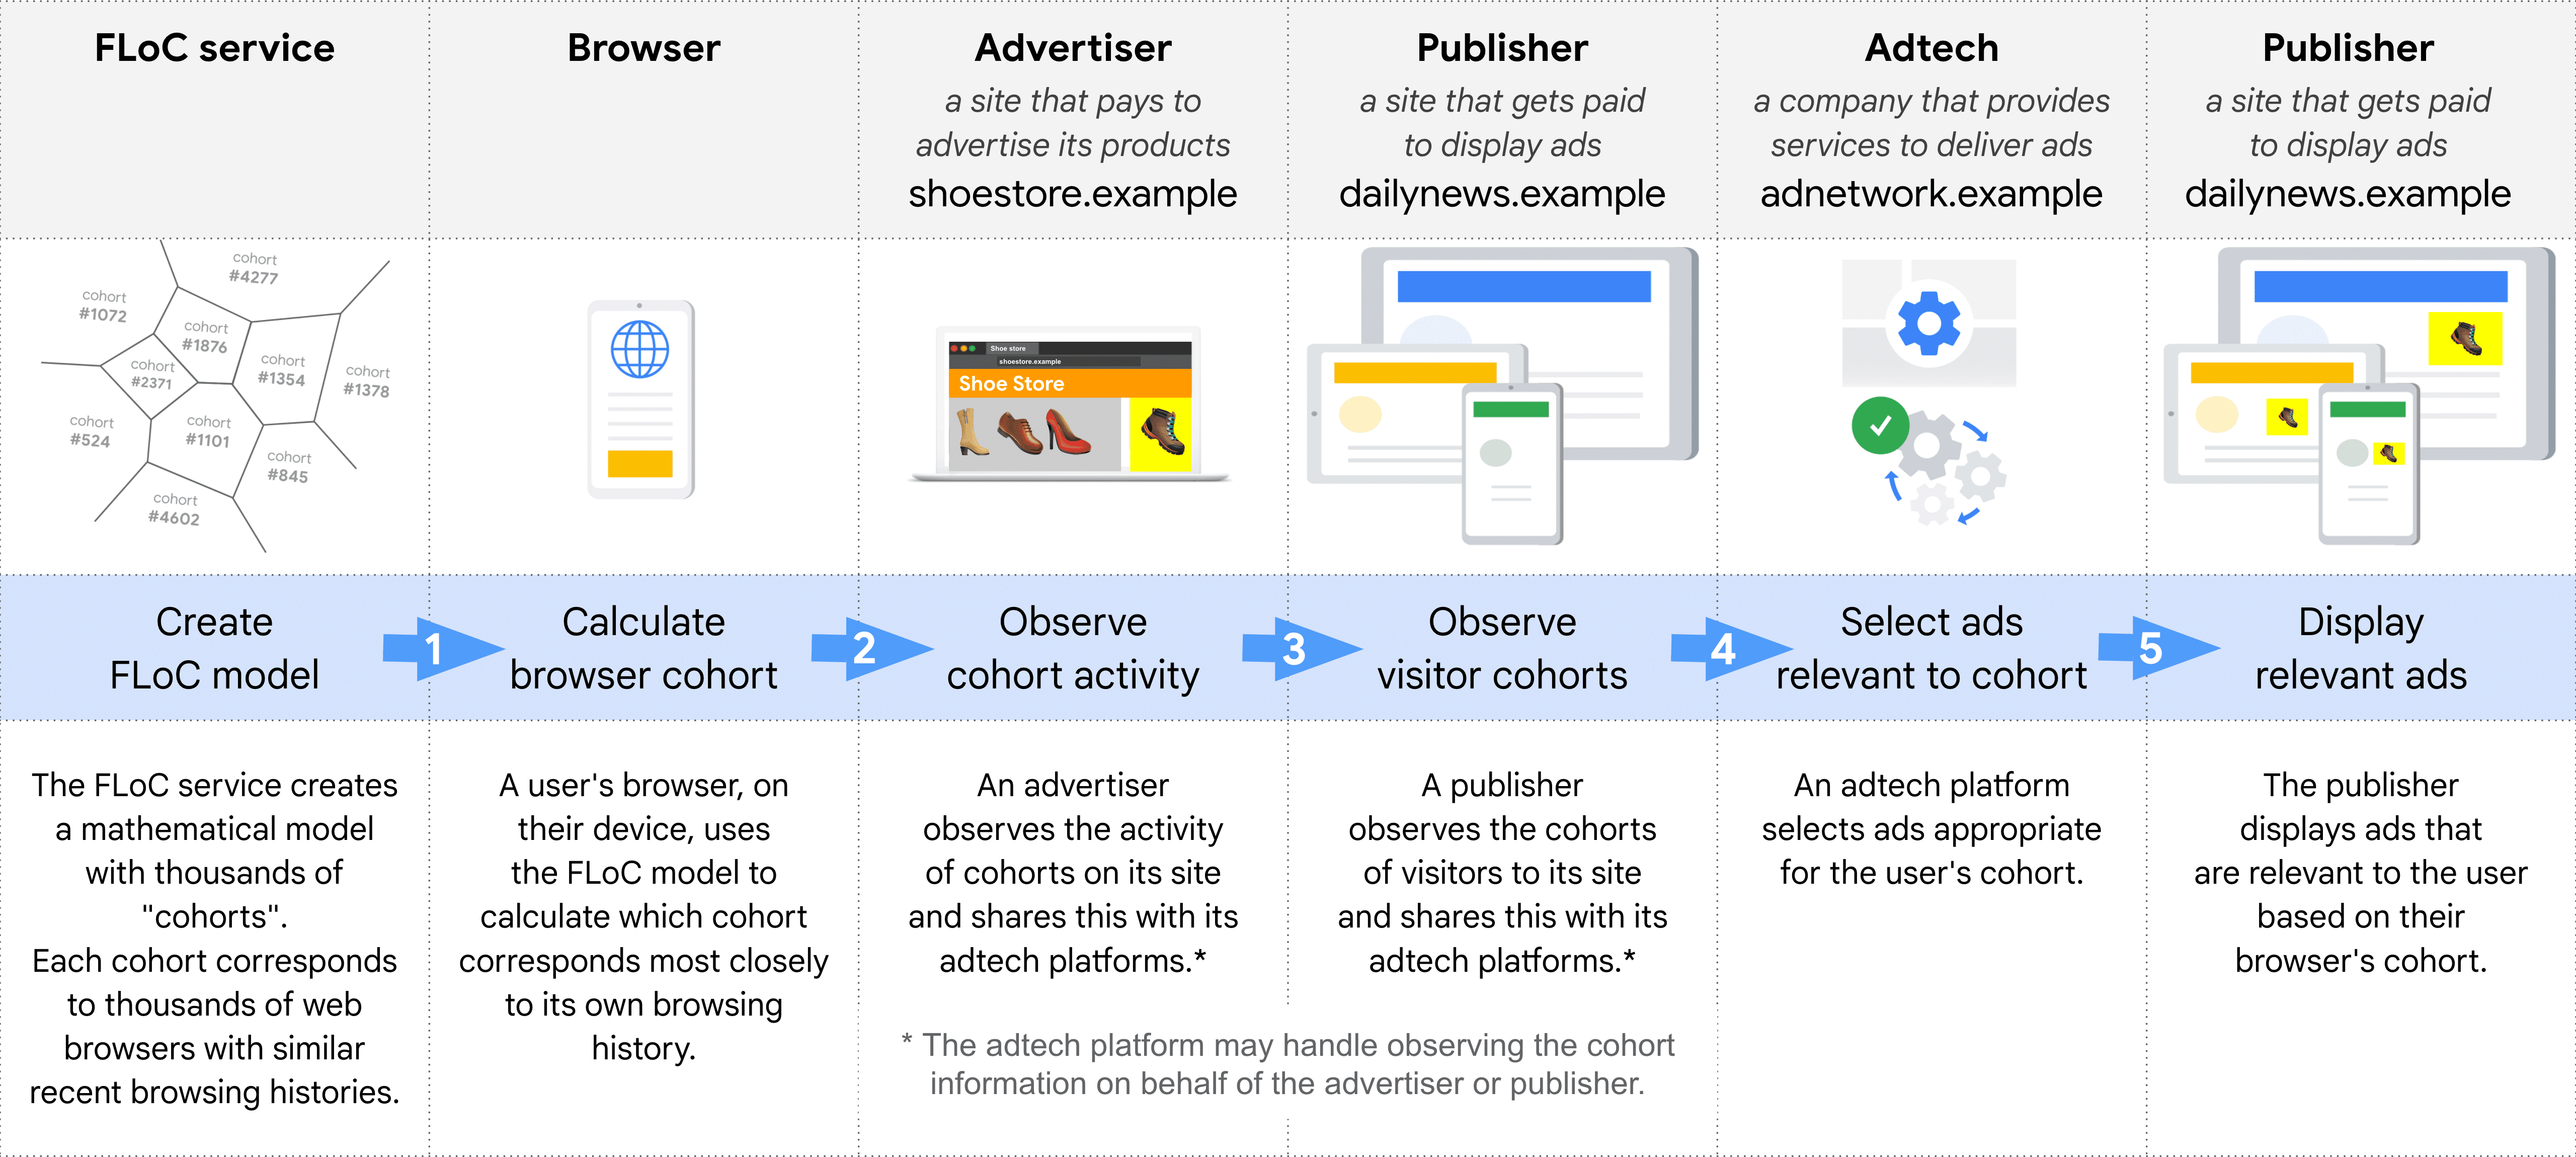 แผนภาพที่แสดงบทบาทต่างๆ ในการเลือกและแสดงโฆษณาผ่าน
  FLoC: บริการ FLoC, เบราว์เซอร์, ผู้ลงโฆษณา, ผู้เผยแพร่โฆษณา (เพื่อสังเกตกลุ่มประชากรตามรุ่น), Adtech,
  ผู้เผยแพร่โฆษณา (เพื่อแสดงโฆษณา)